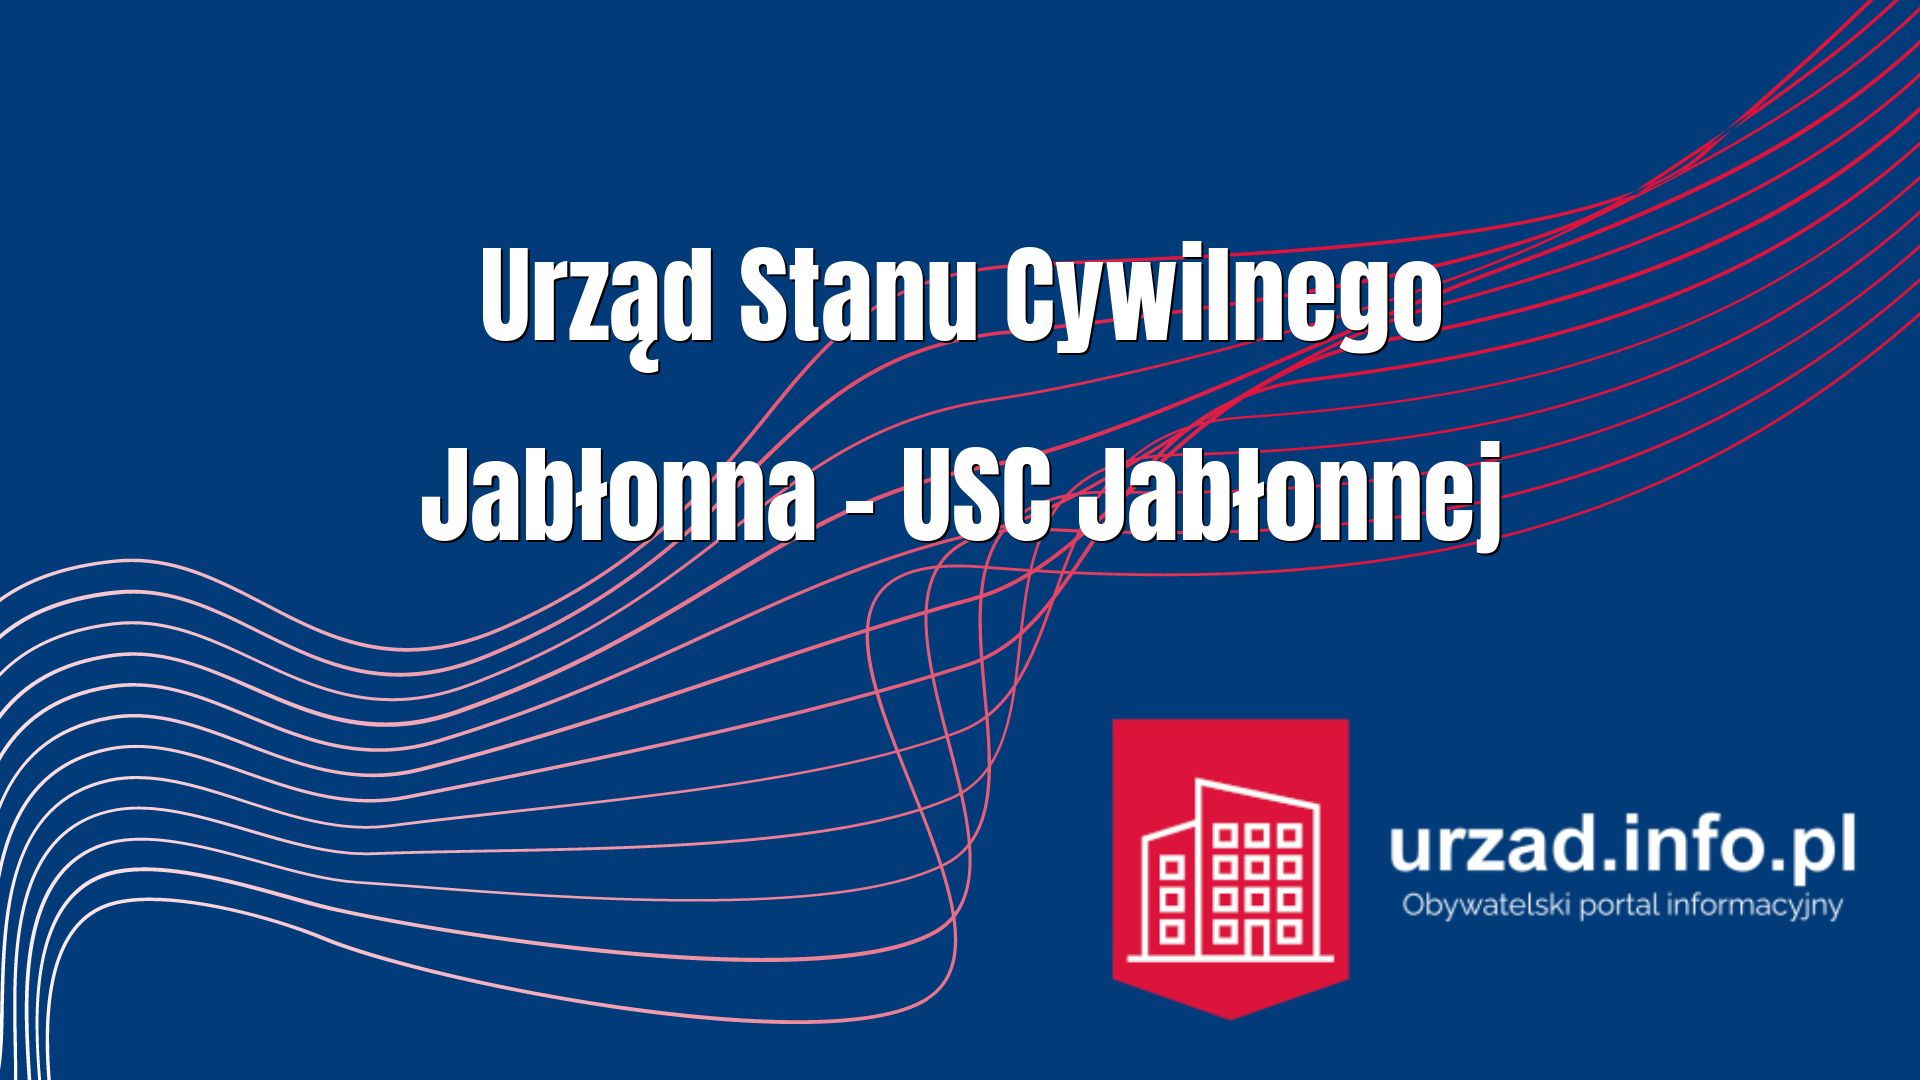 Urząd Stanu Cywilnego Jabłonna – USC Jabłonnej